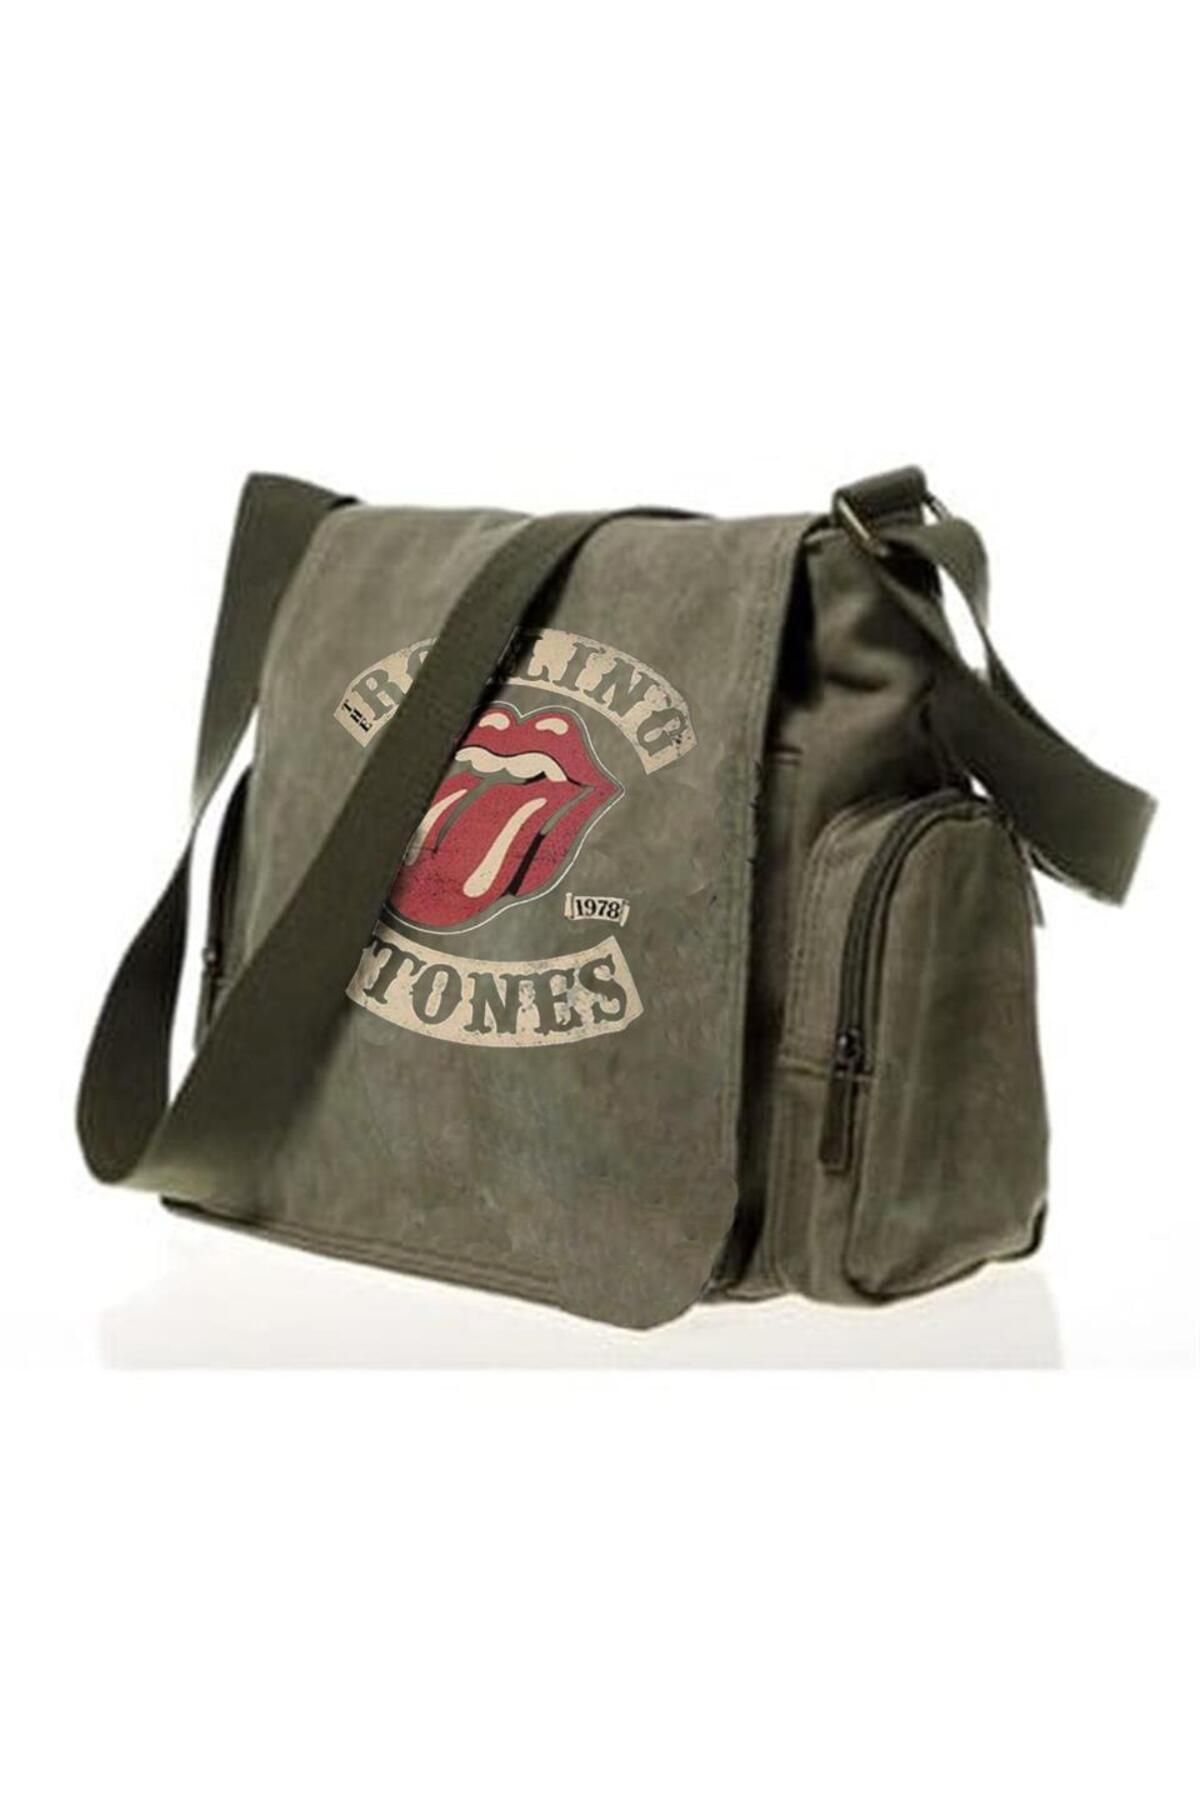 Touz Eyl Rolling Stones Vintage Baskılı Unisex Yeşil Postacı Çantası